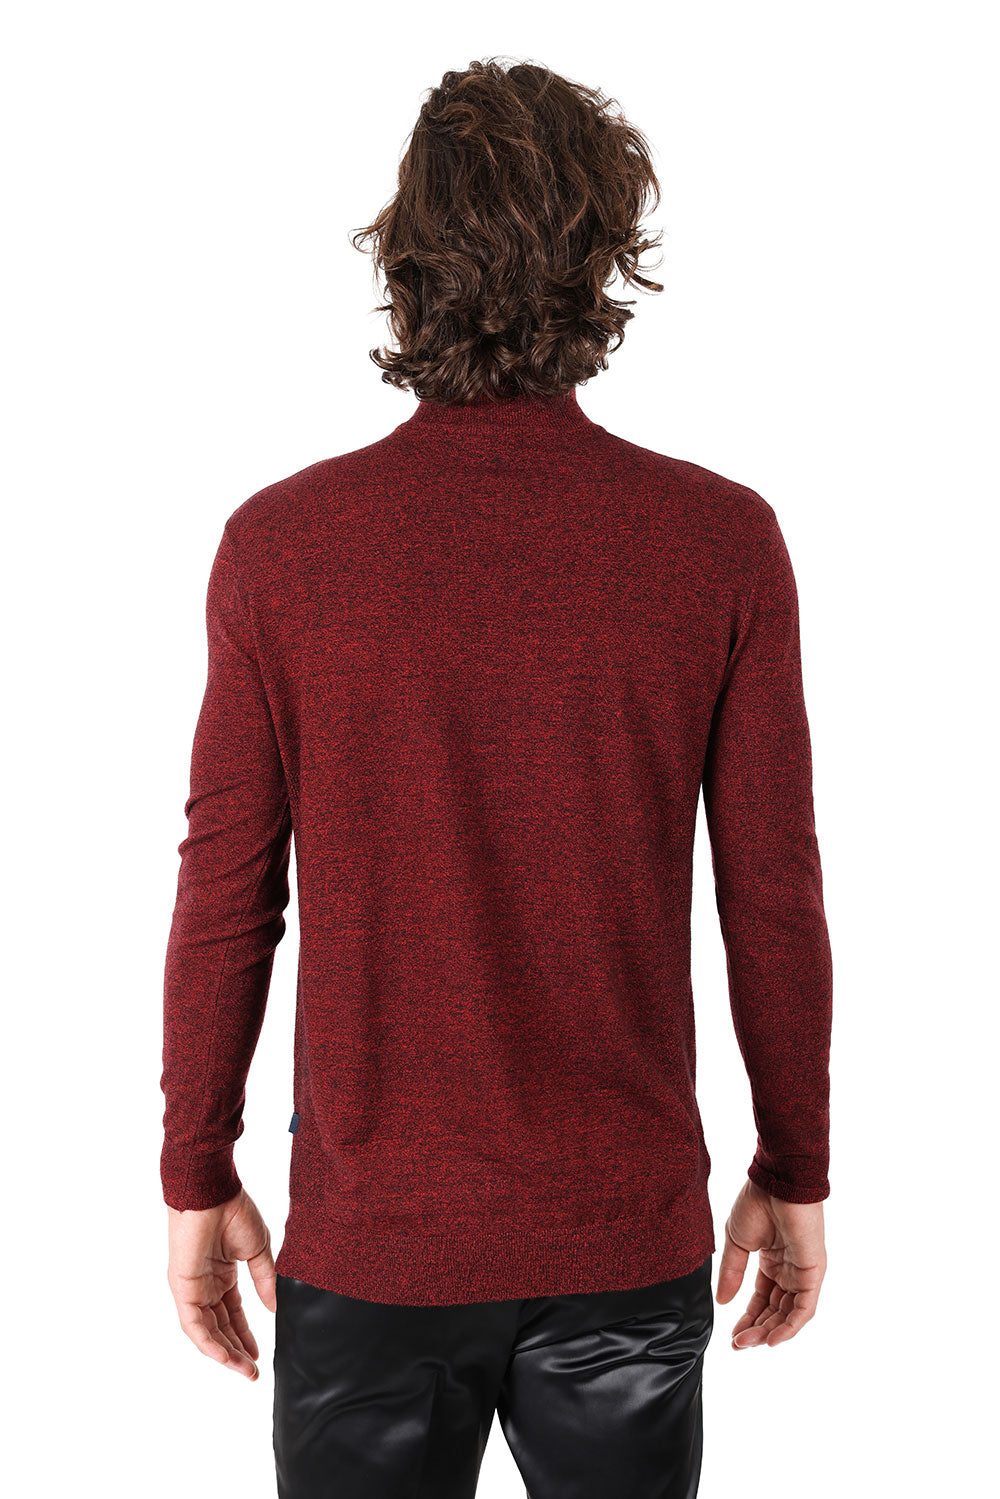 Men's Turtleneck Ribbed Solid Color Mock Turtleneck Sweater 2LS2103 Rust